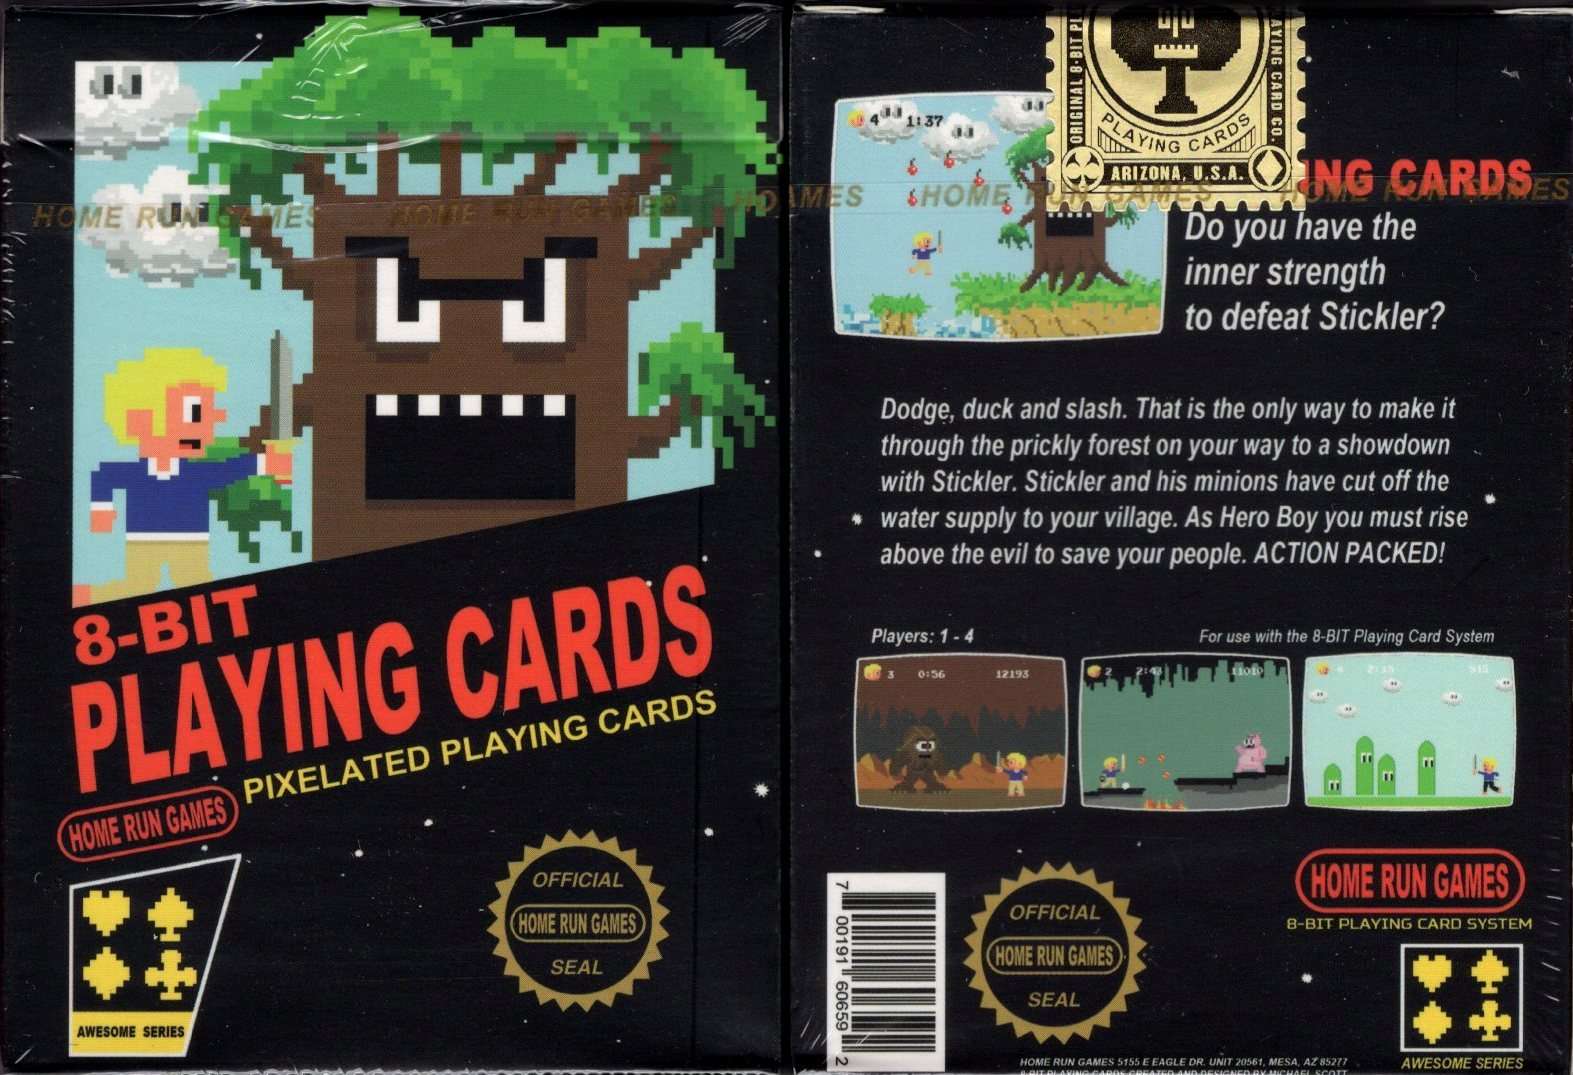 PlayingCardDecks.com-8-Bit Original Playing Cards